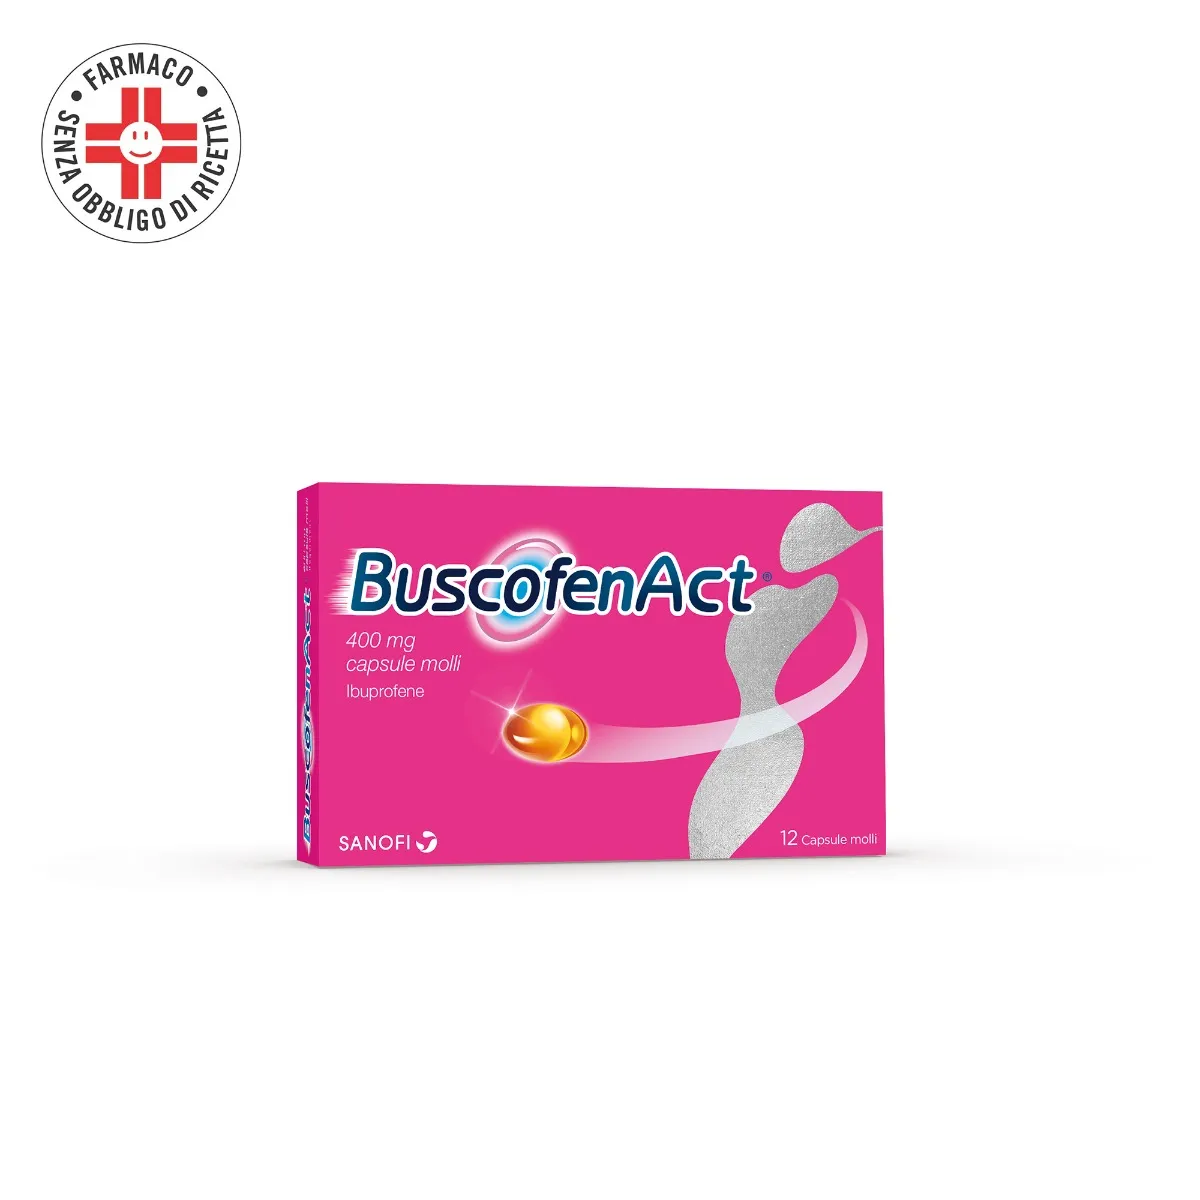 BuscofenAct 400 mg Ibuprofene 12 Capsule Molli - Analgesico